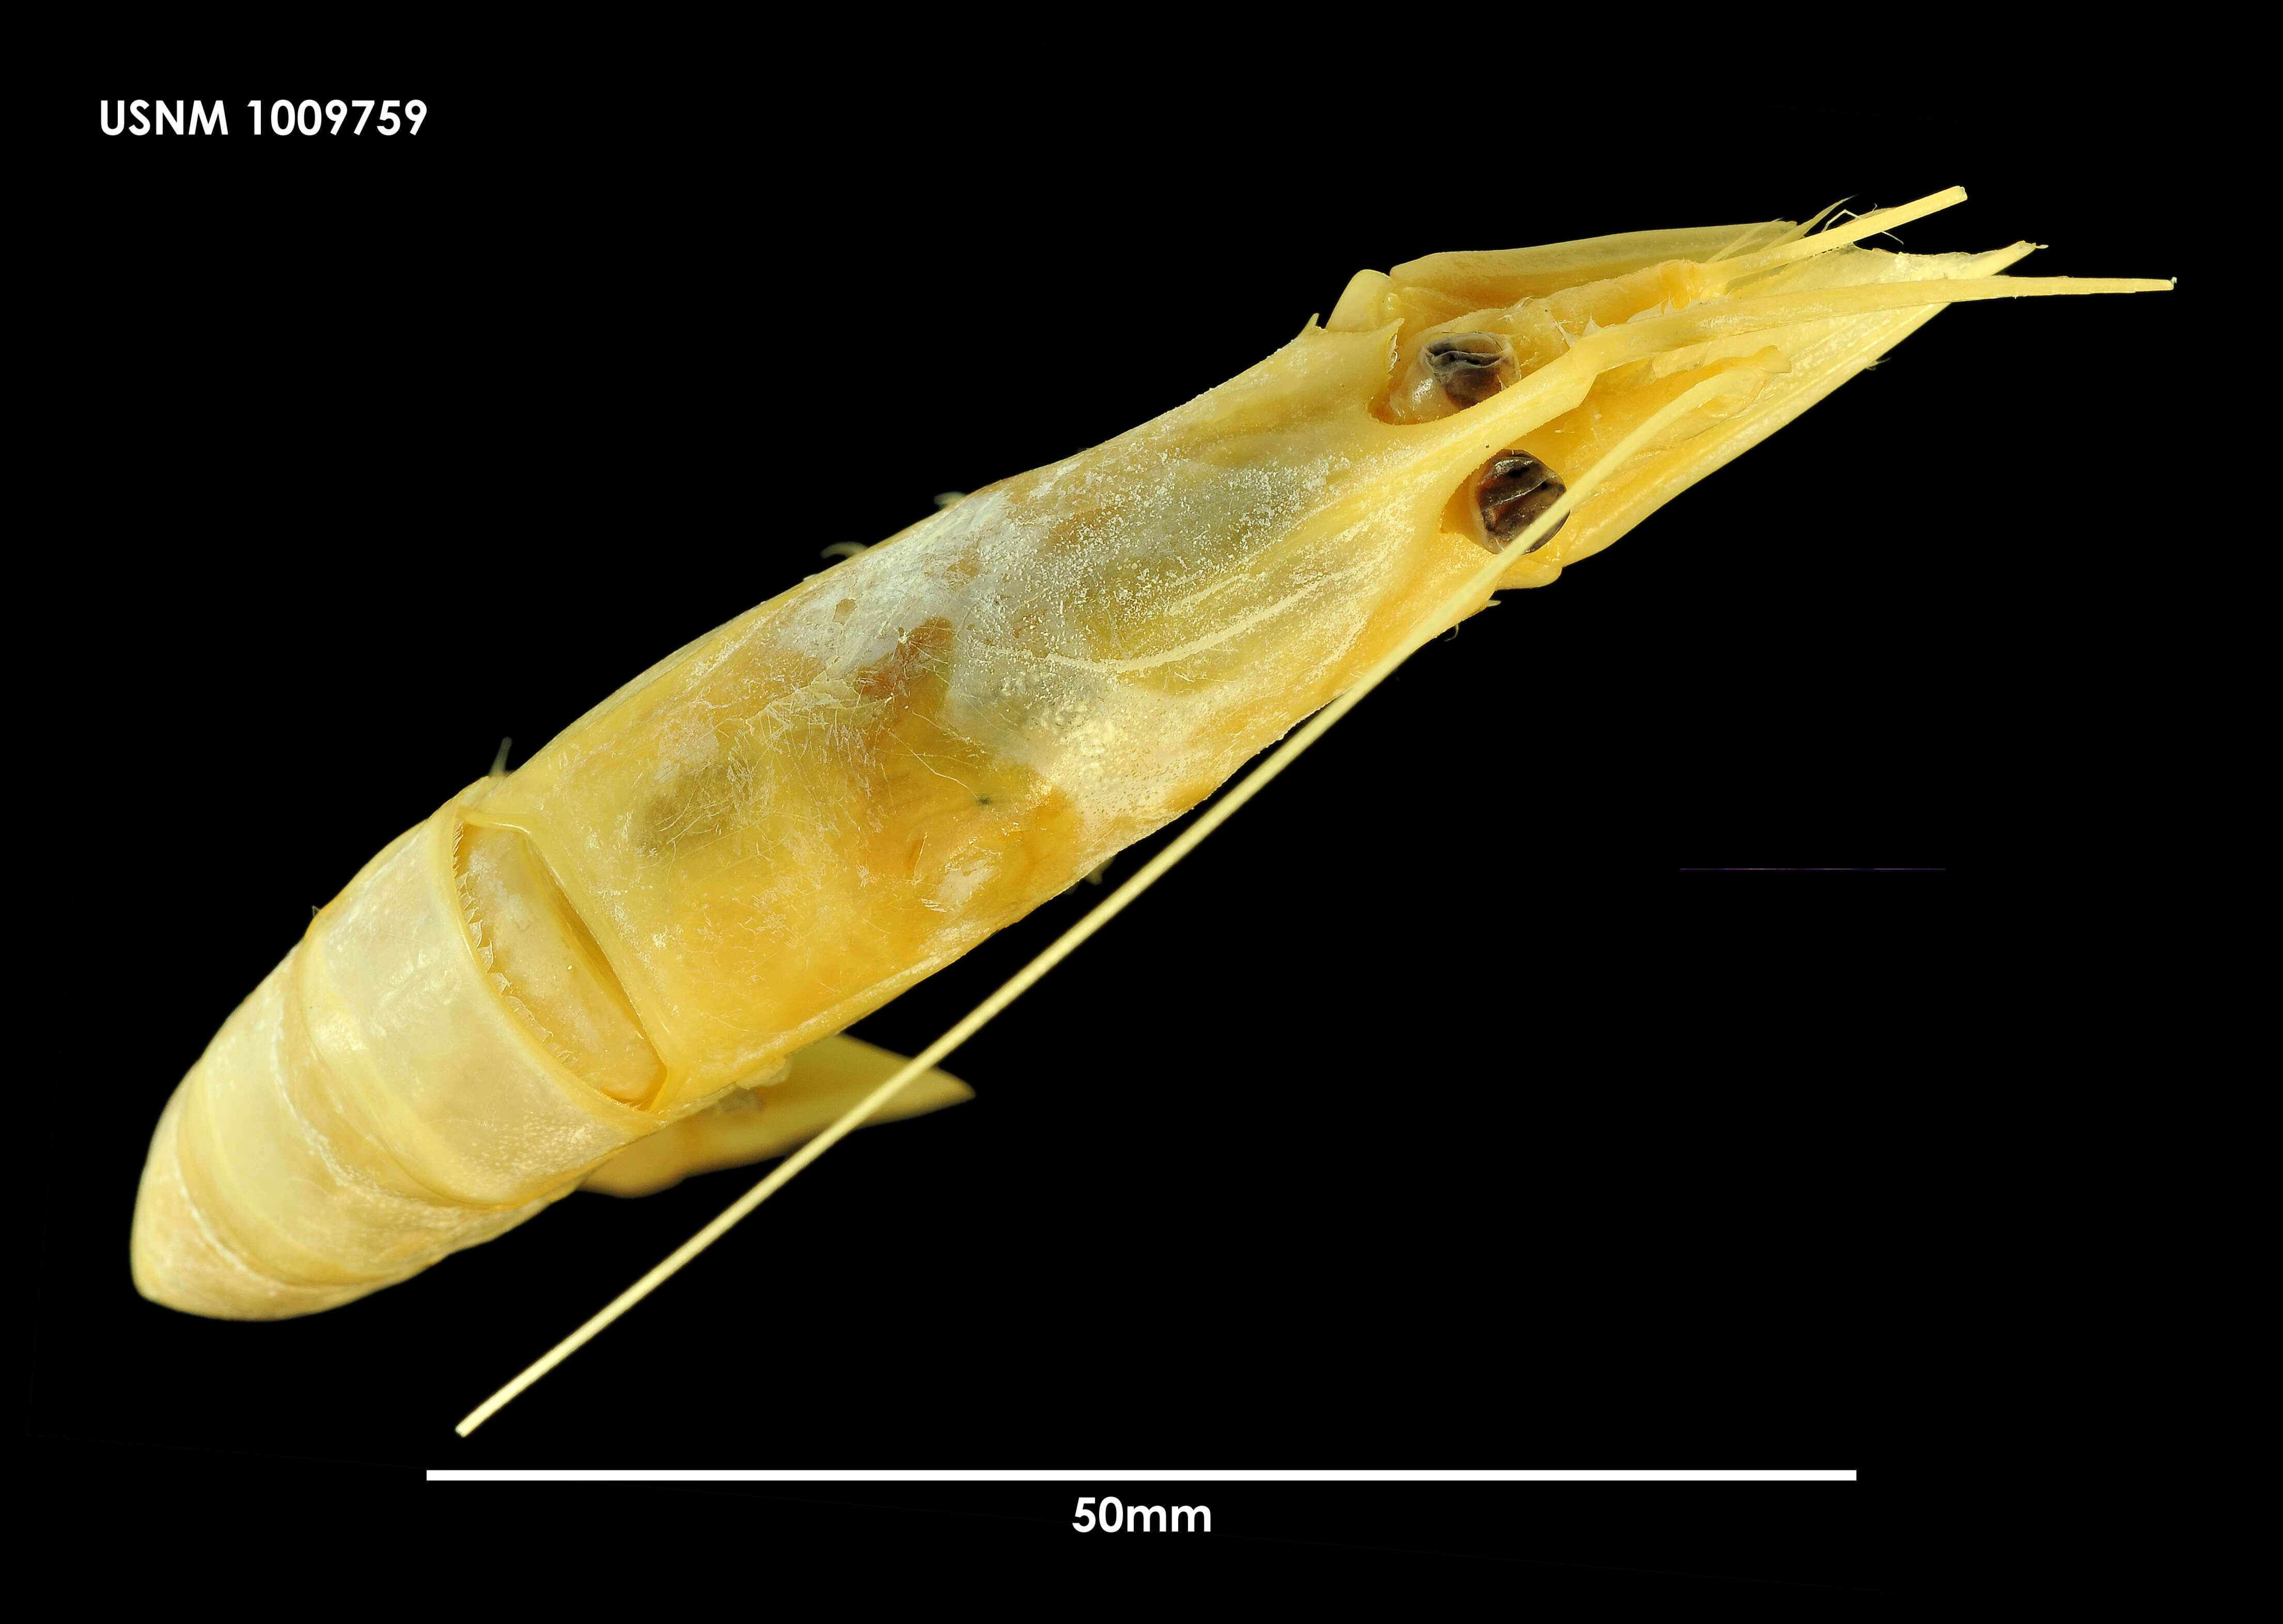 Image of Nematocarcinus lanceopes Spence Bate 1888